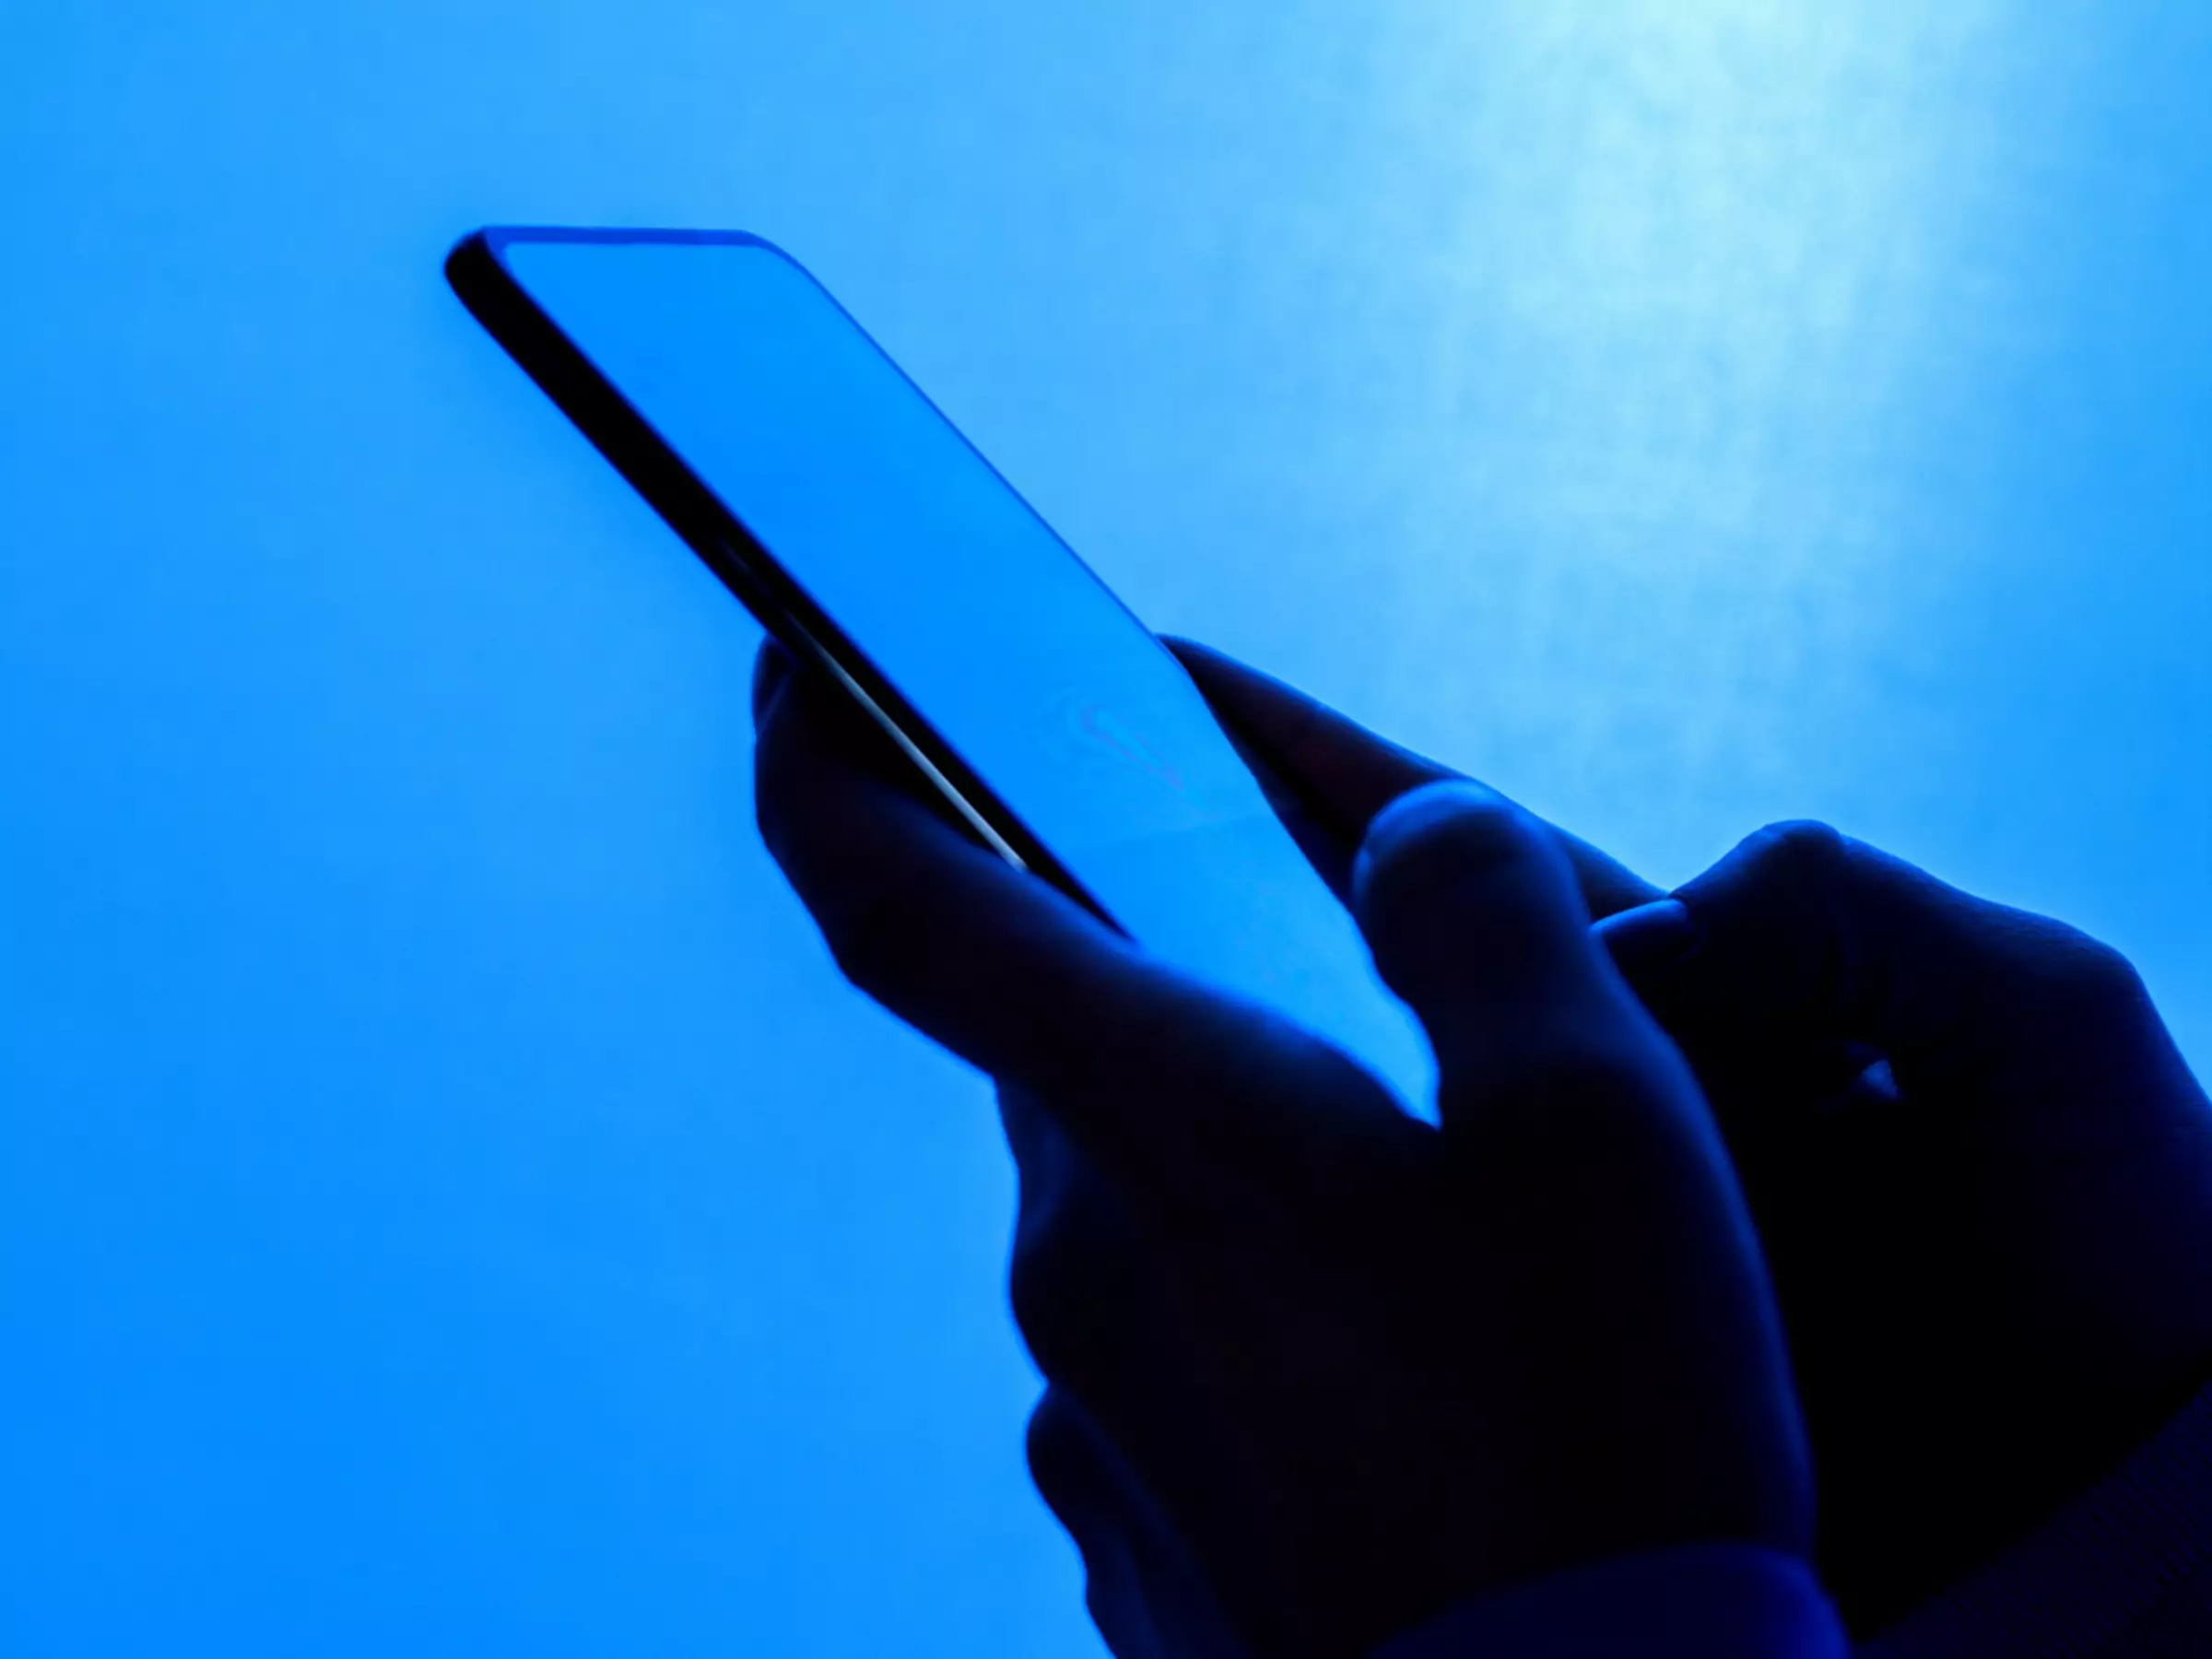 Nærbillede af hænder, der holder telefonen mod blå baggrund